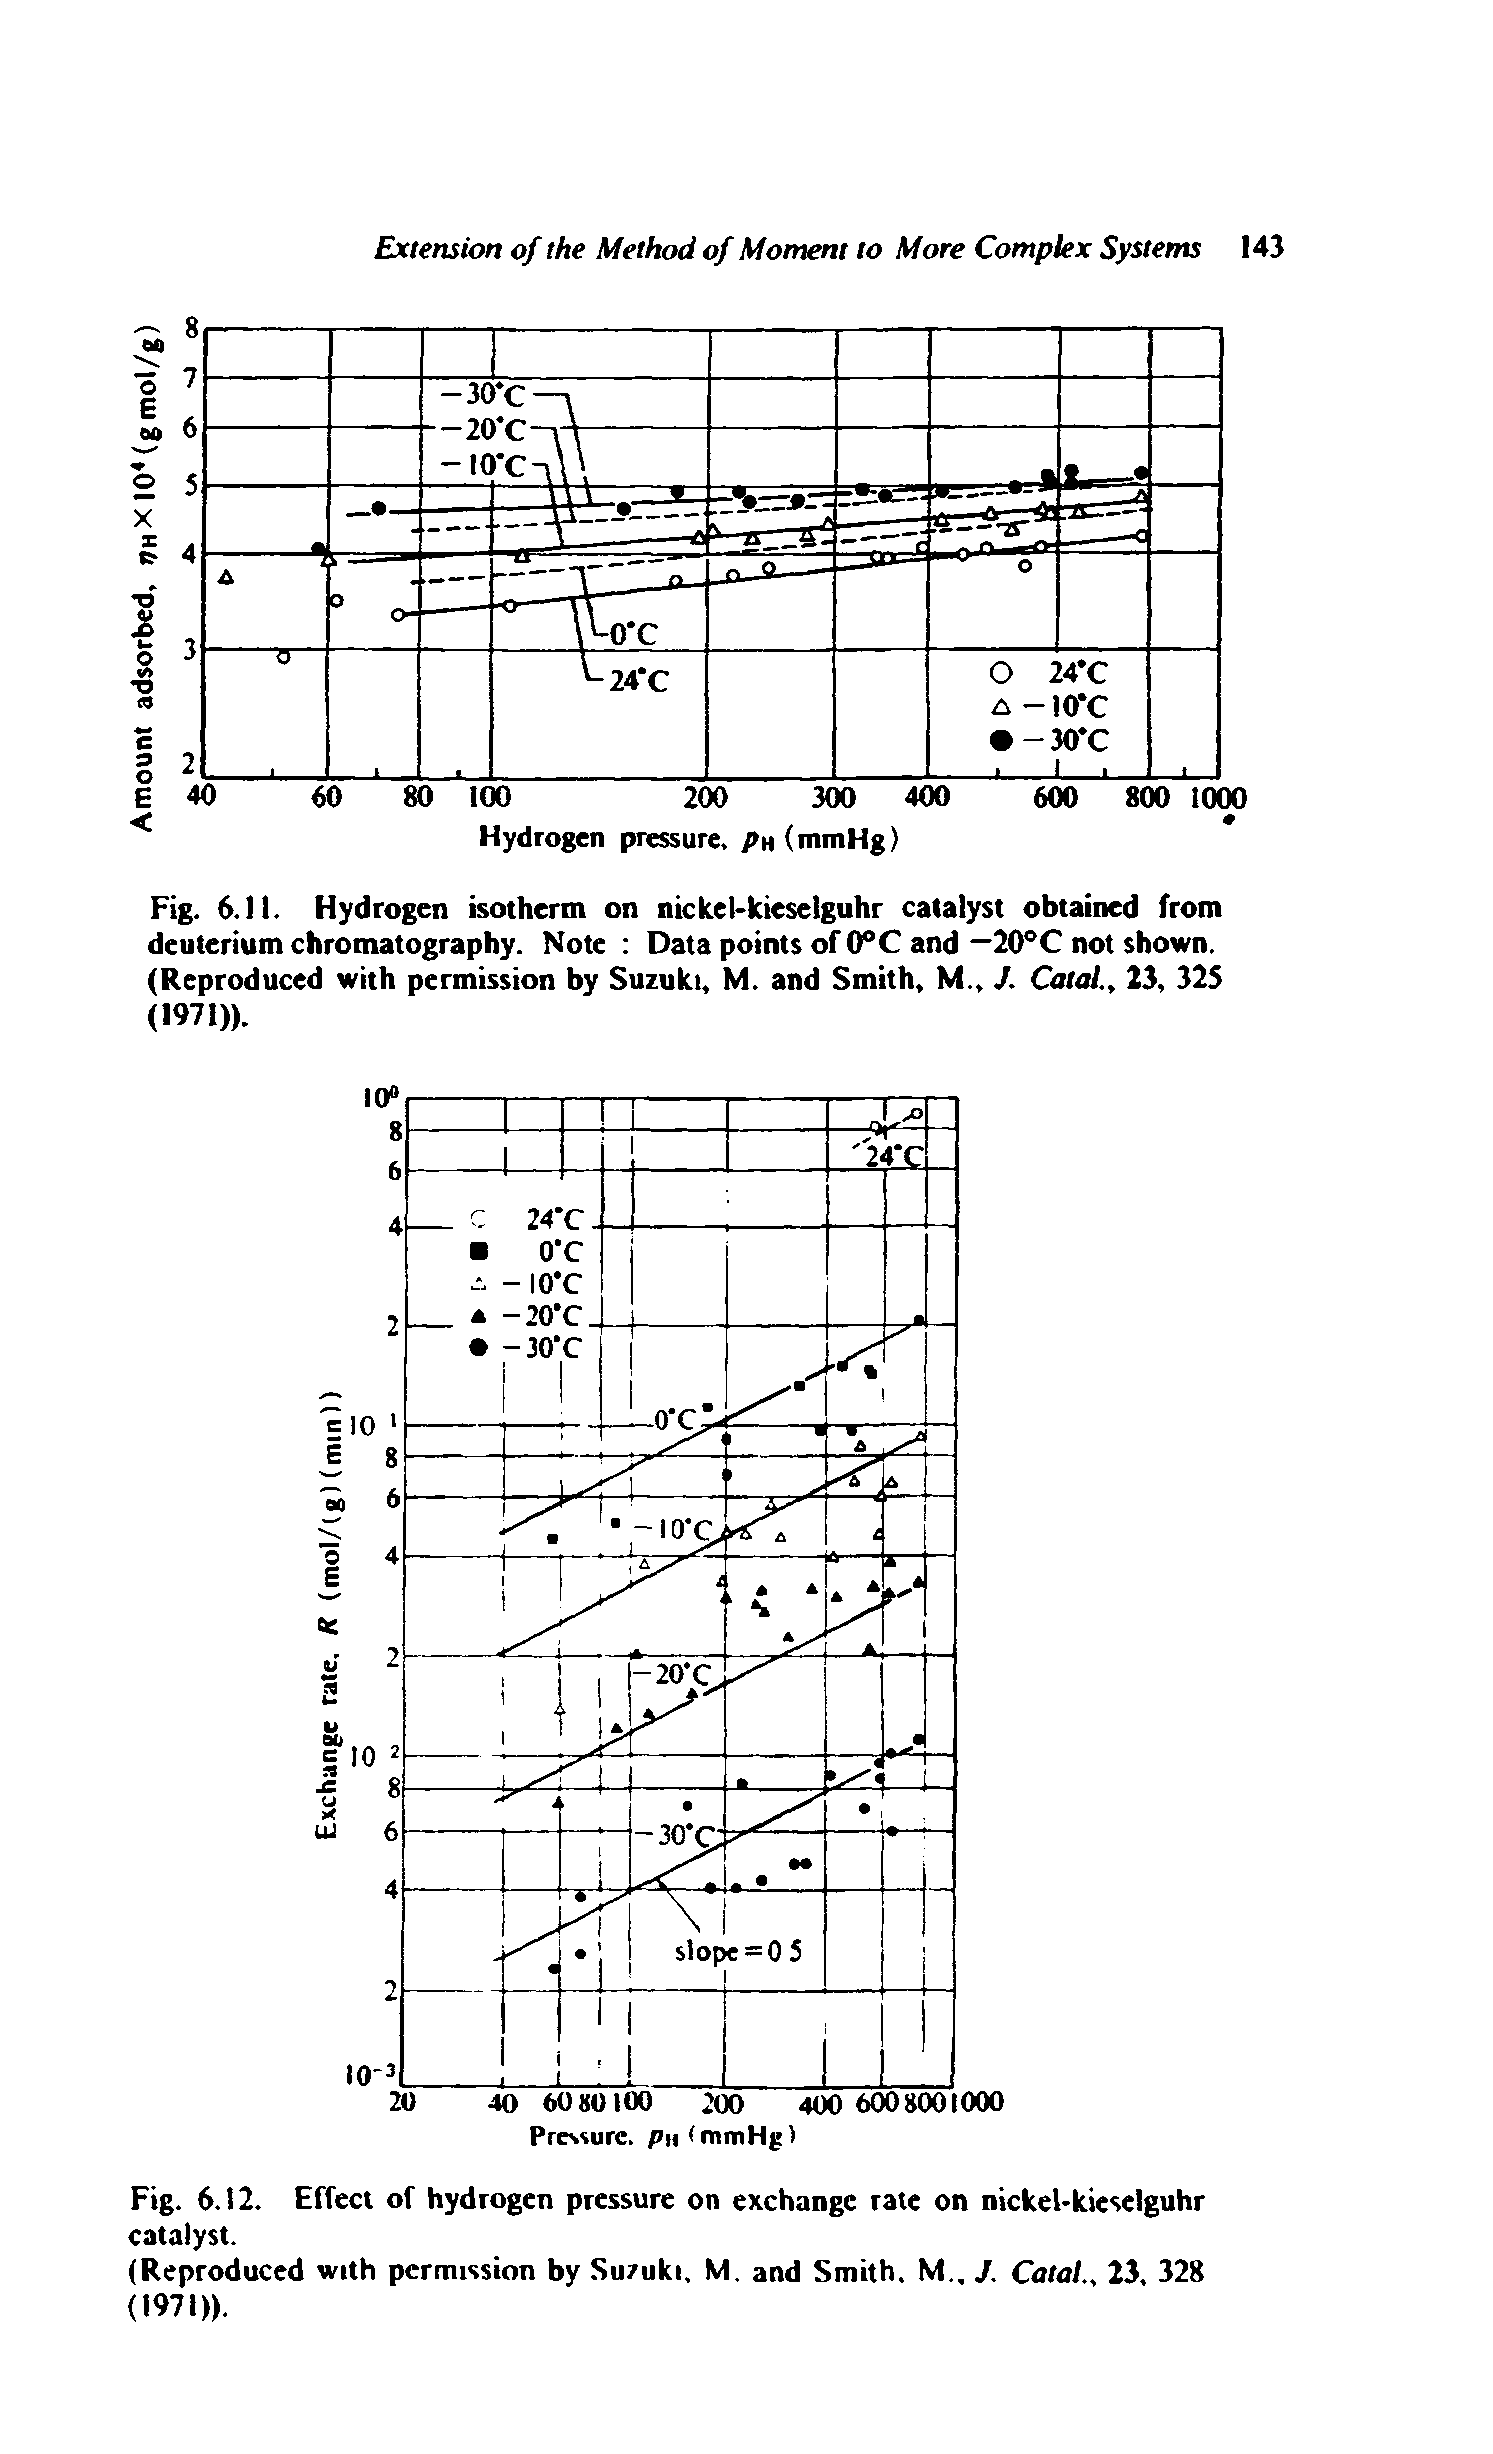 Fig. 6.12. Effect of hydrogen pressure on exchange rate on nickel-kieselguhr catalyst.